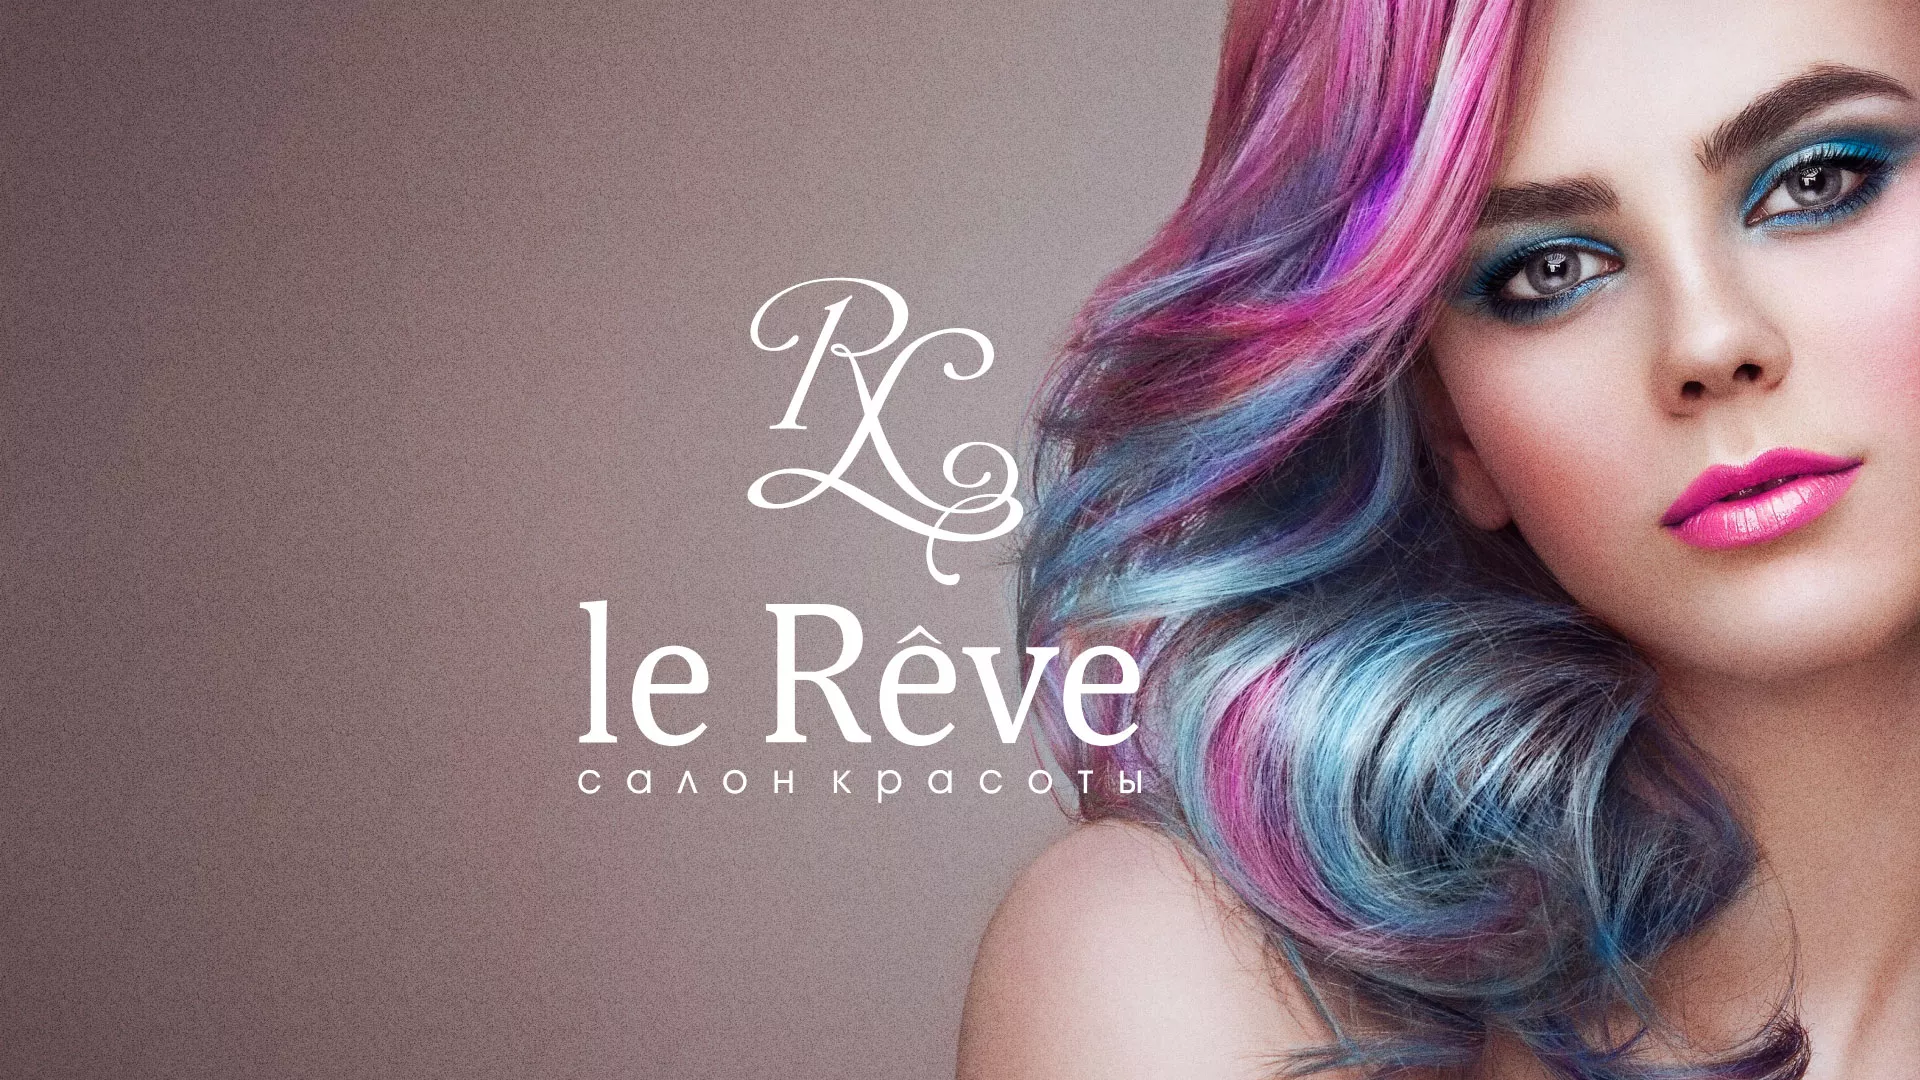 Создание сайта для салона красоты «Le Reve» в Козьмодемьянске